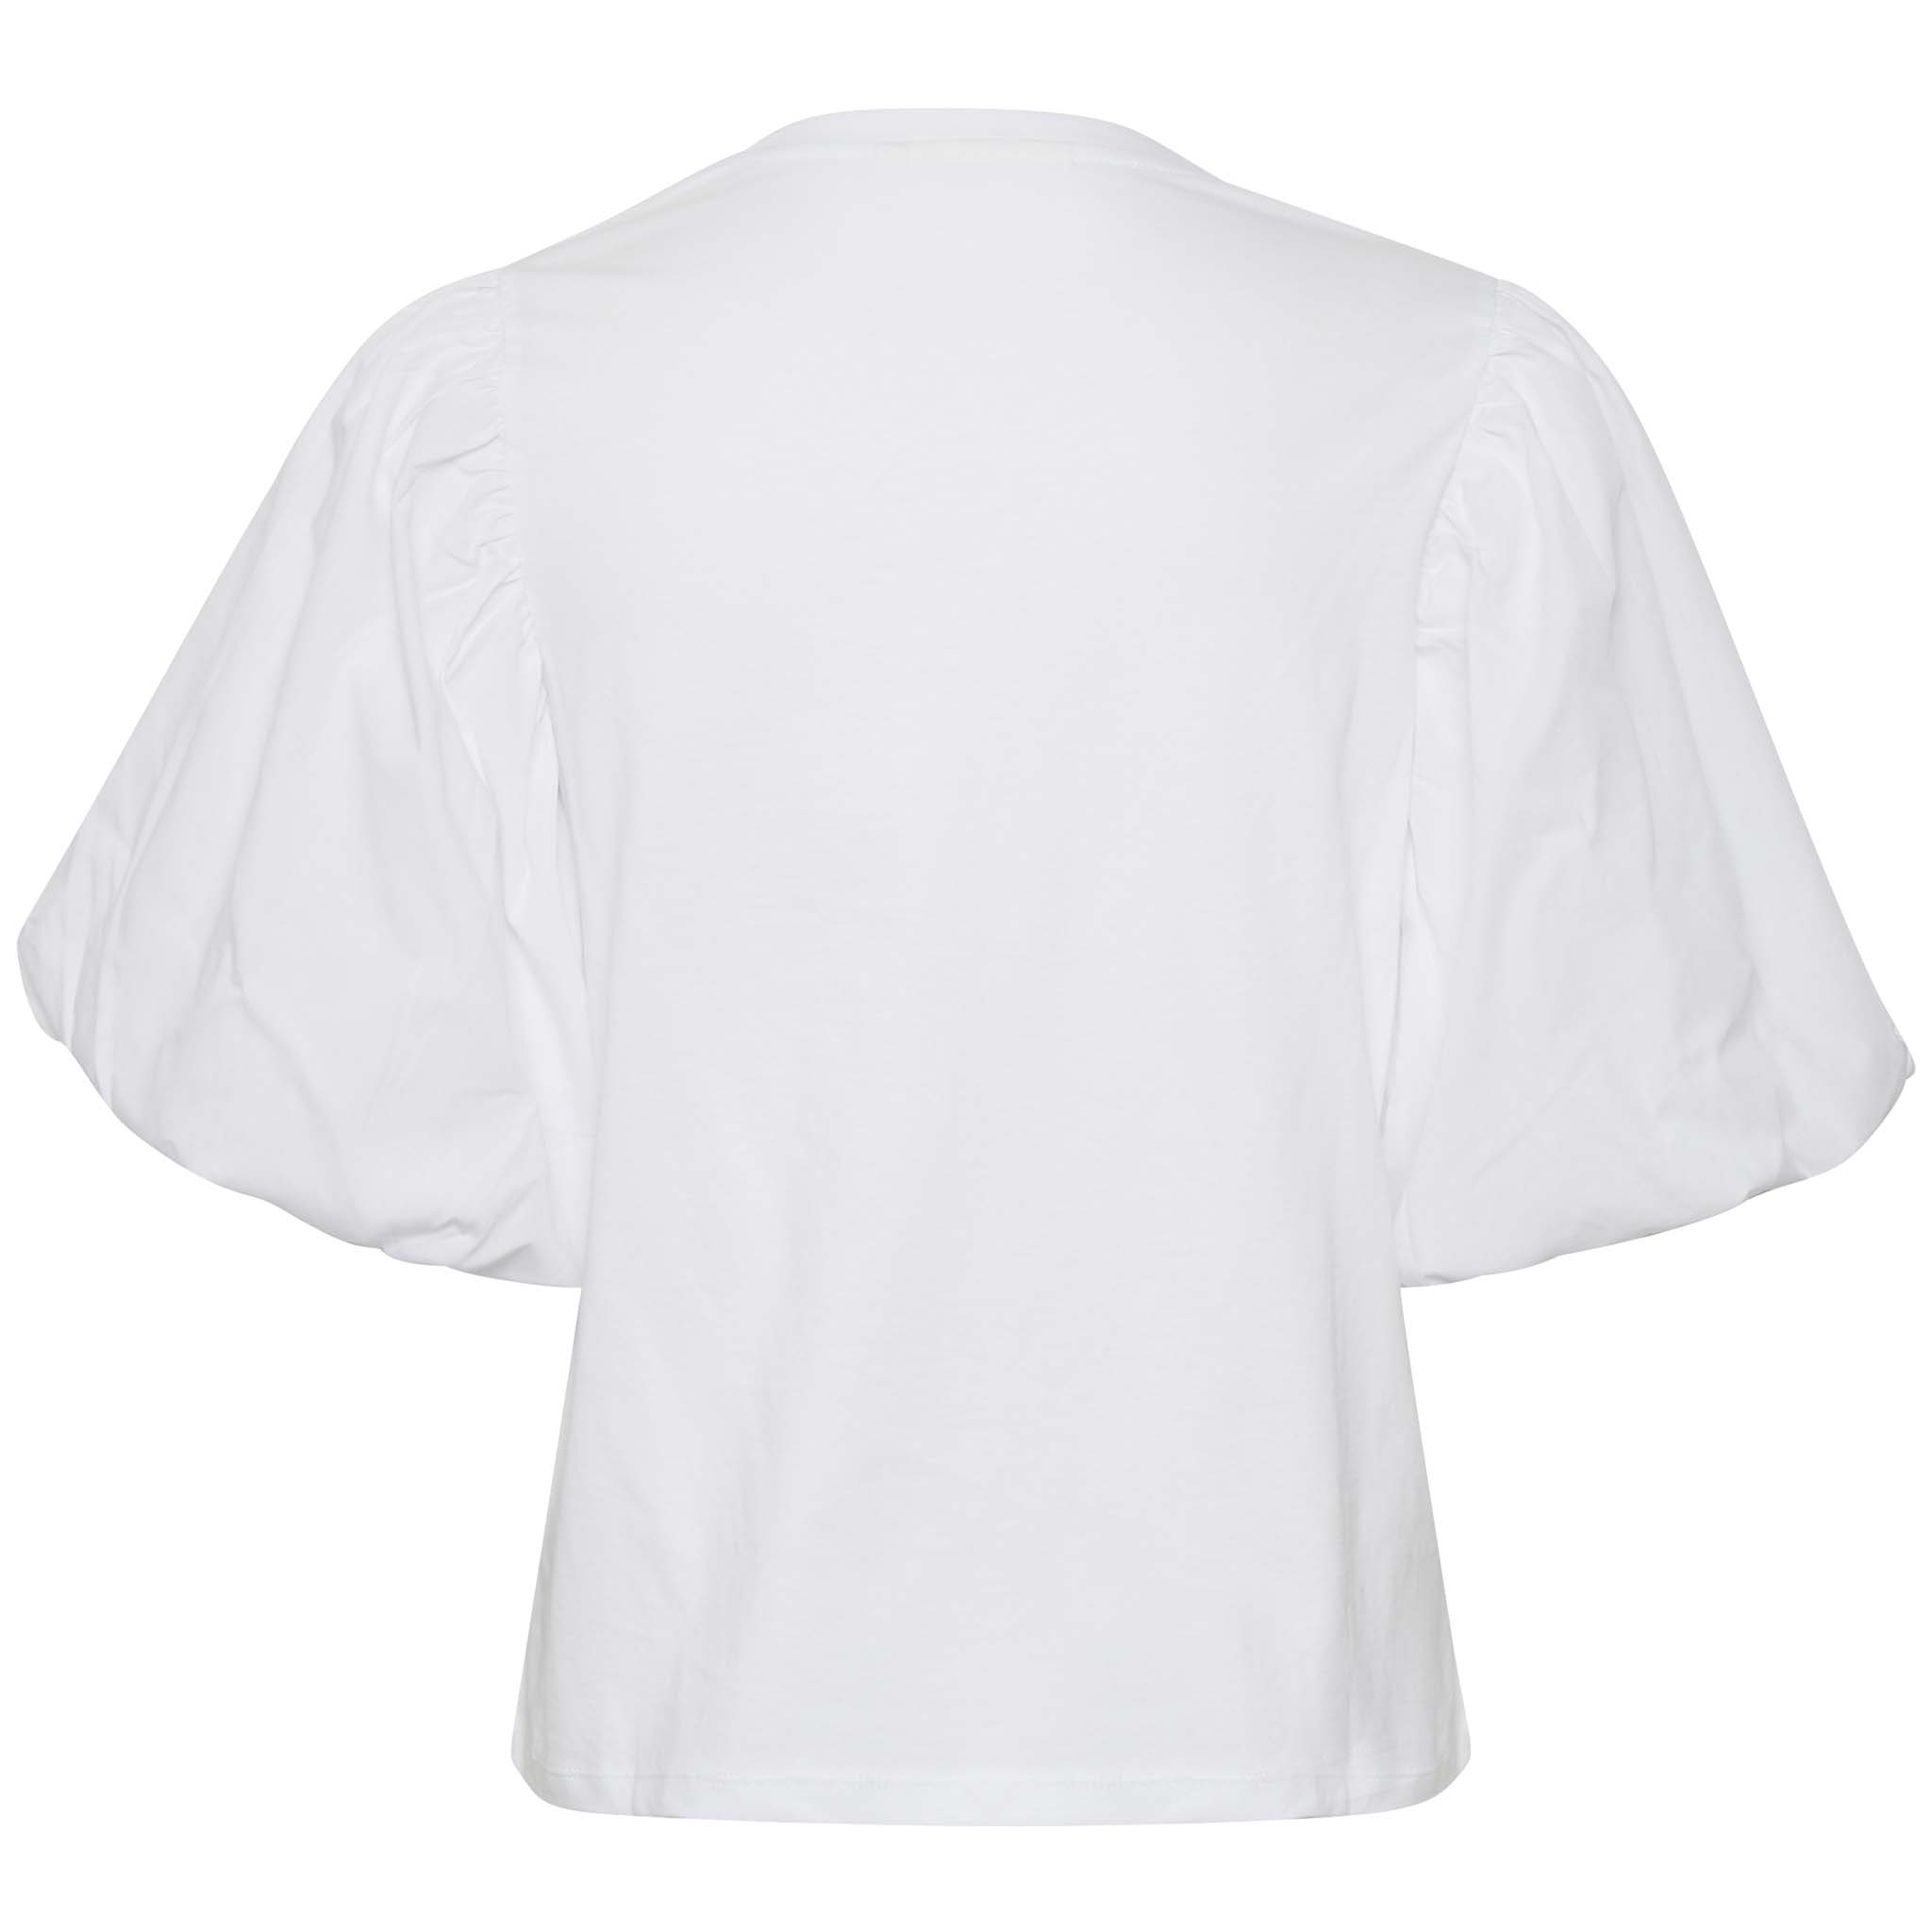 In Wear, valkoinen t-paita, jossa suuret puhvihihat. Takakuva.